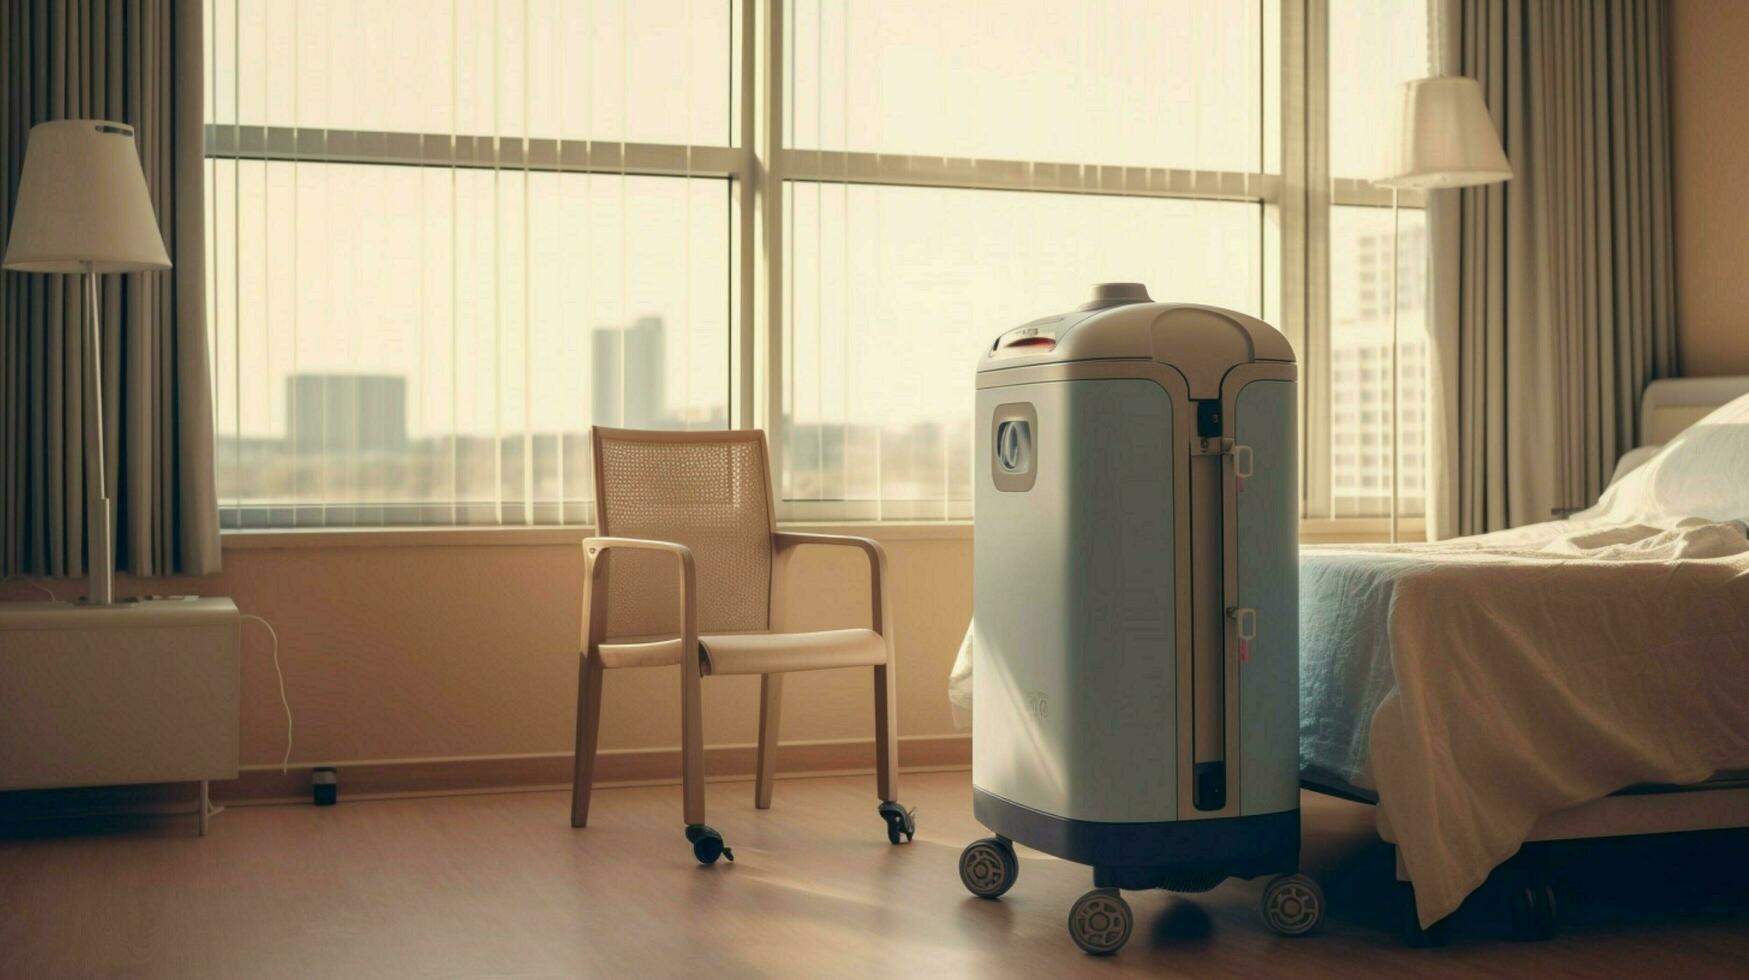 air purifier in hospital room providing clean air photo